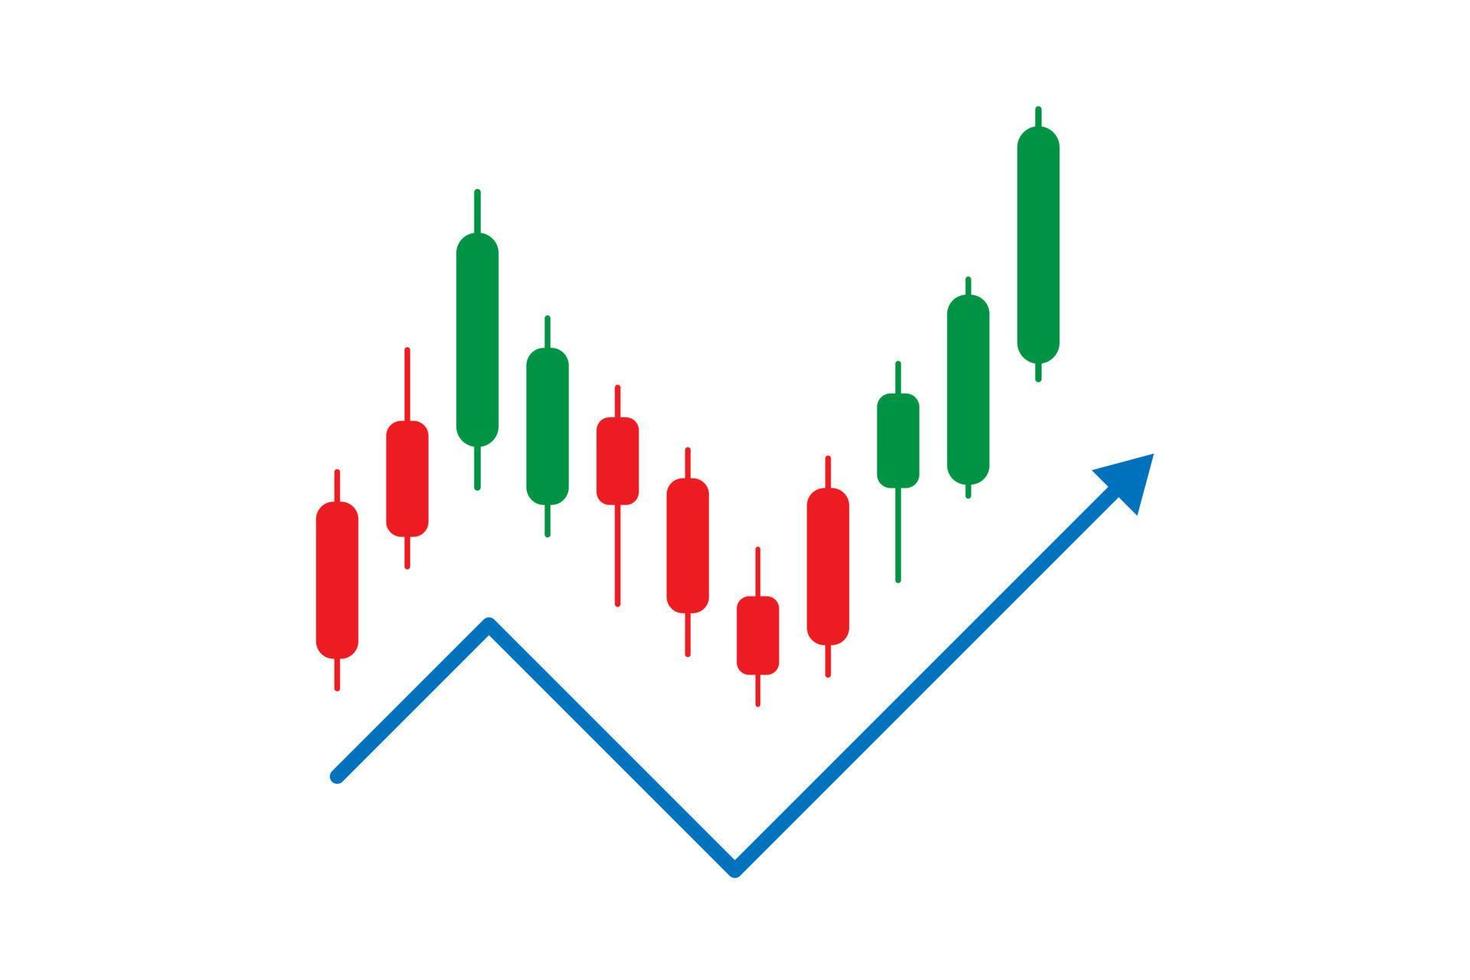 opzioni binarie. candele verdi e rosse. commercio. grafico a candela con movimento ascendente su sfondo bianco. illustrazione vettoriale. vettore